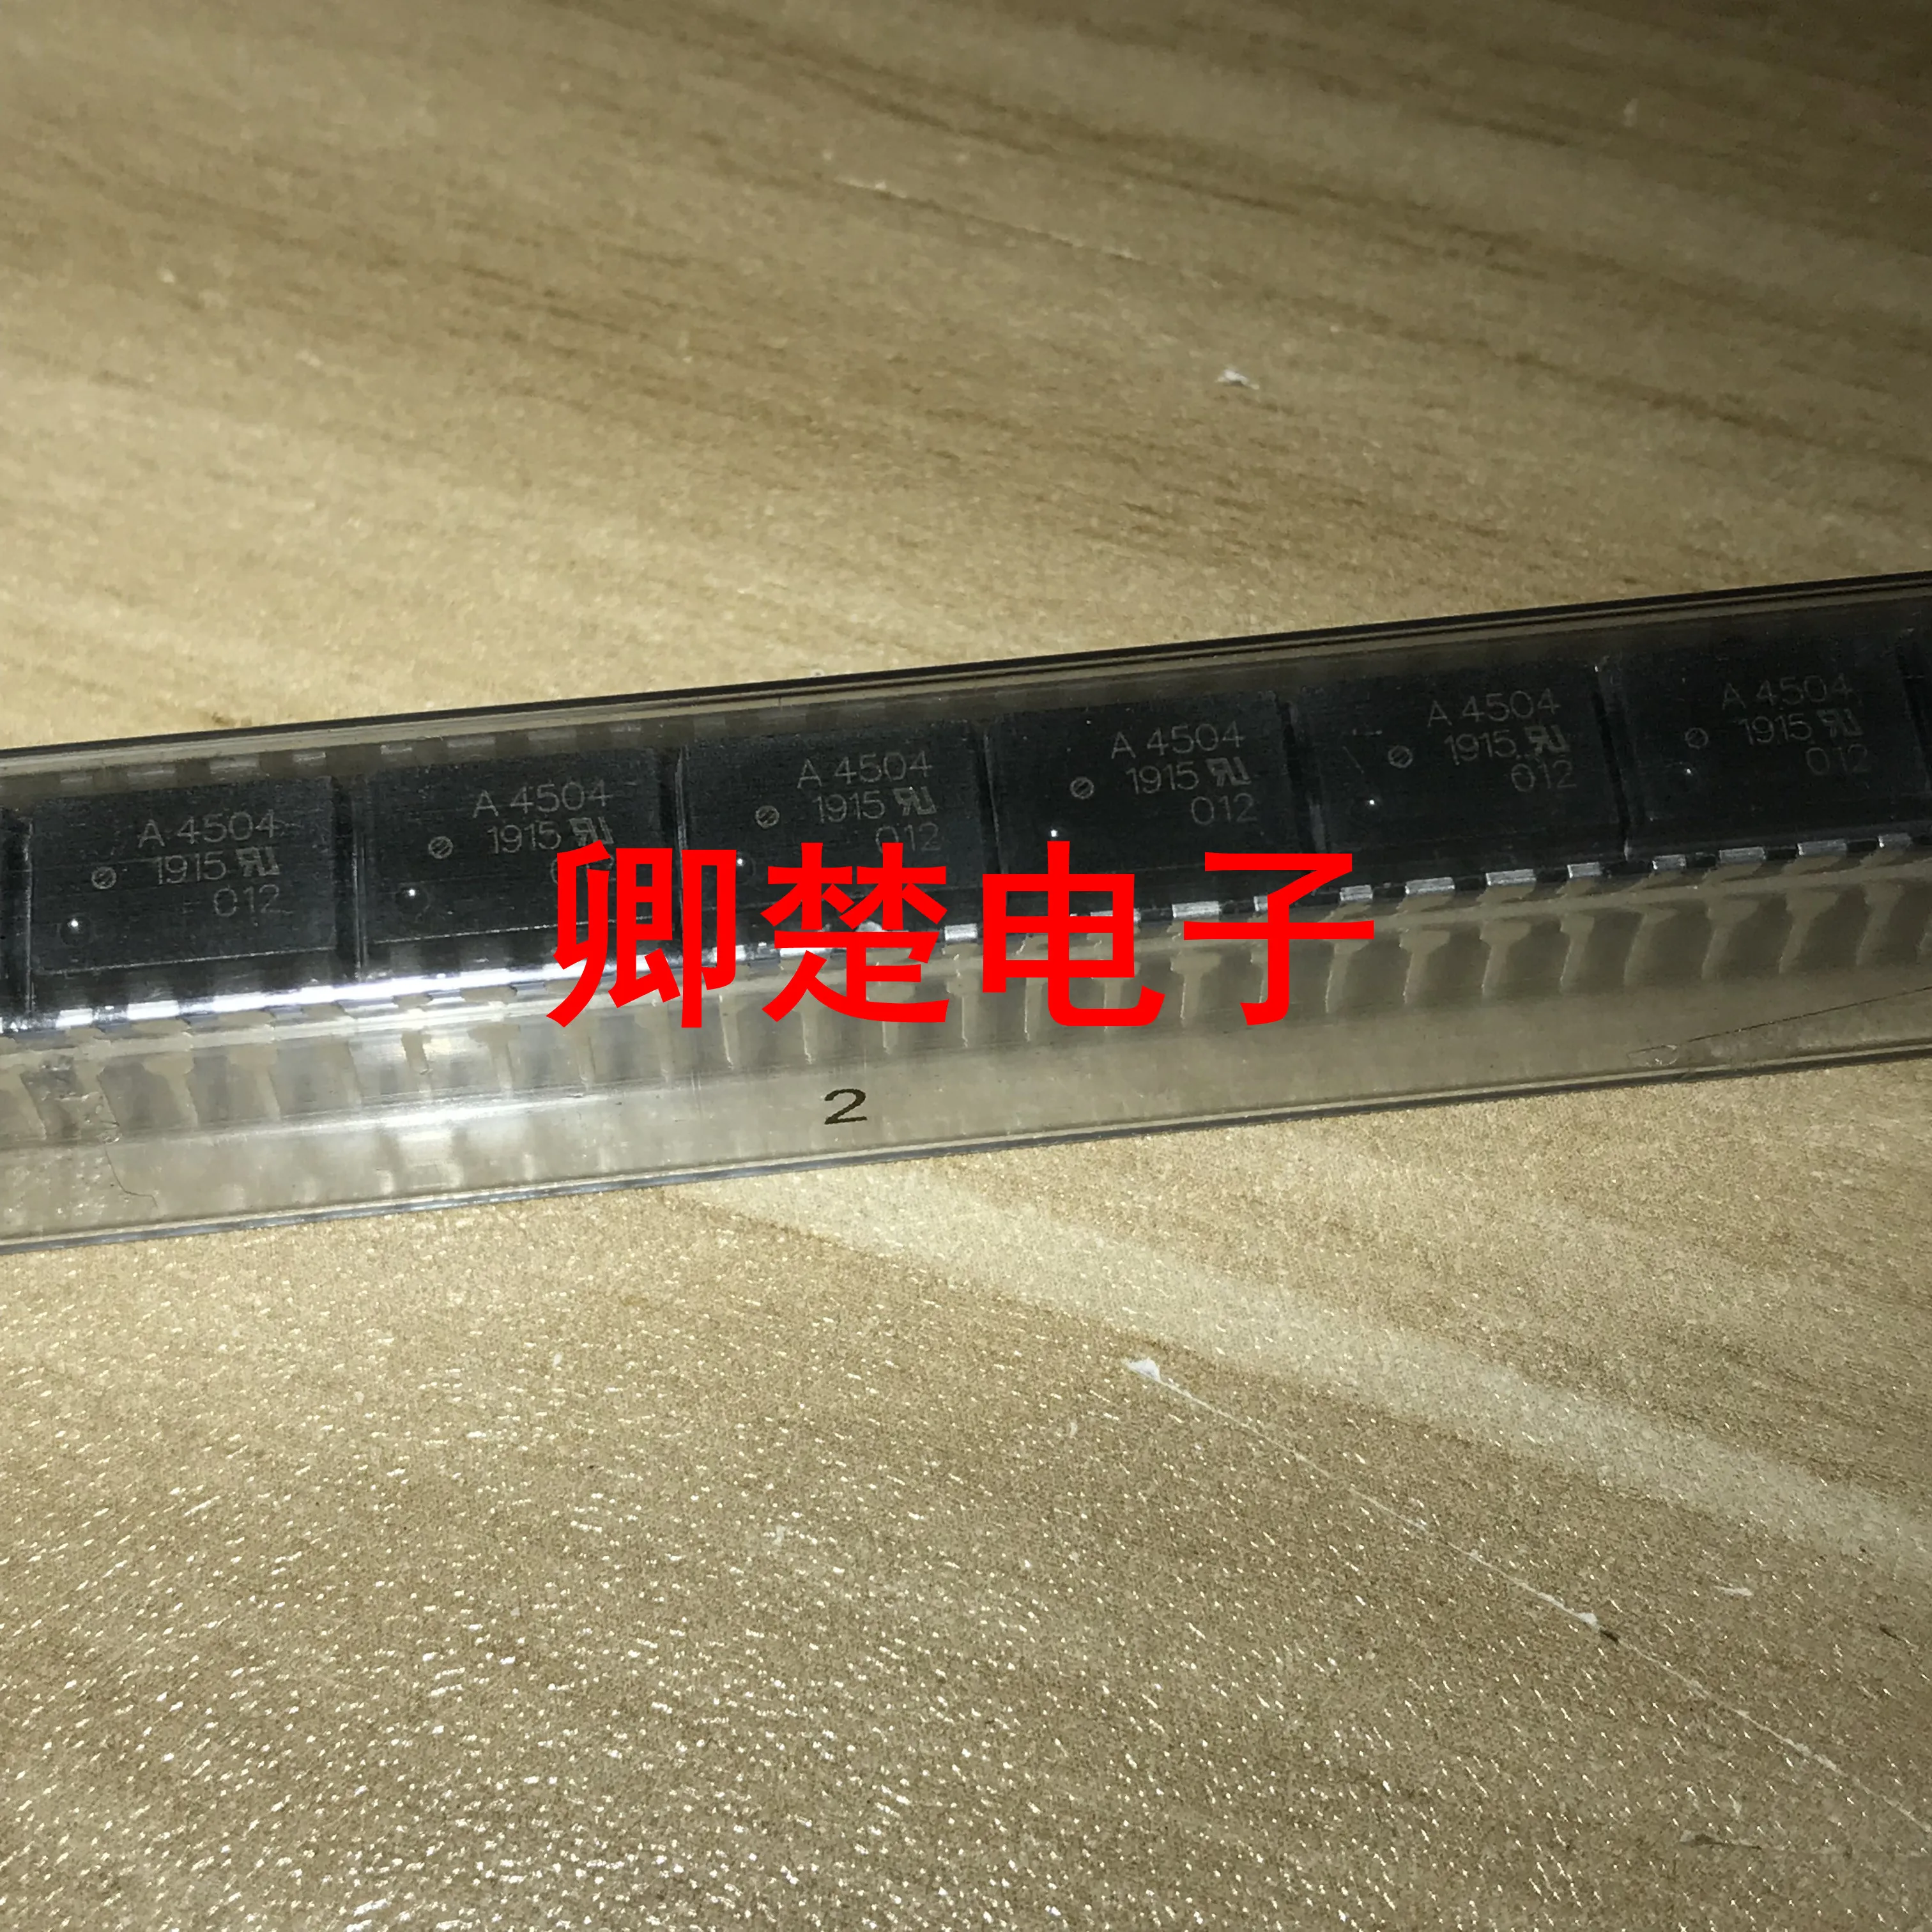 

20pcs original new HCPL-4504 DIP high-speed optical coupler